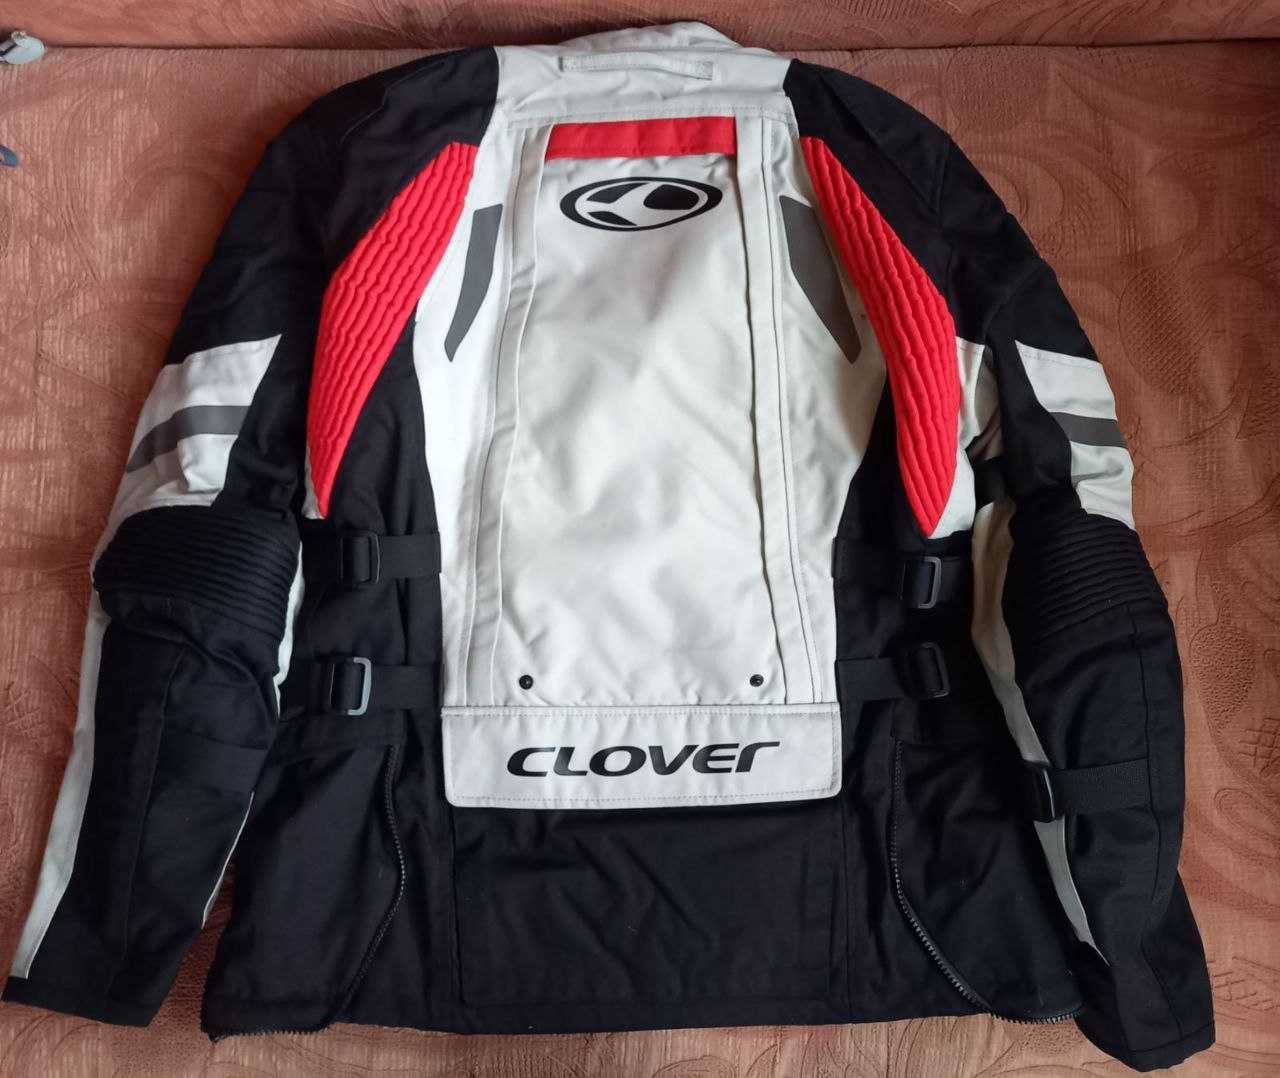 топова туристична мото куртка CLOVER Crossover 3 WP , розм M Италия